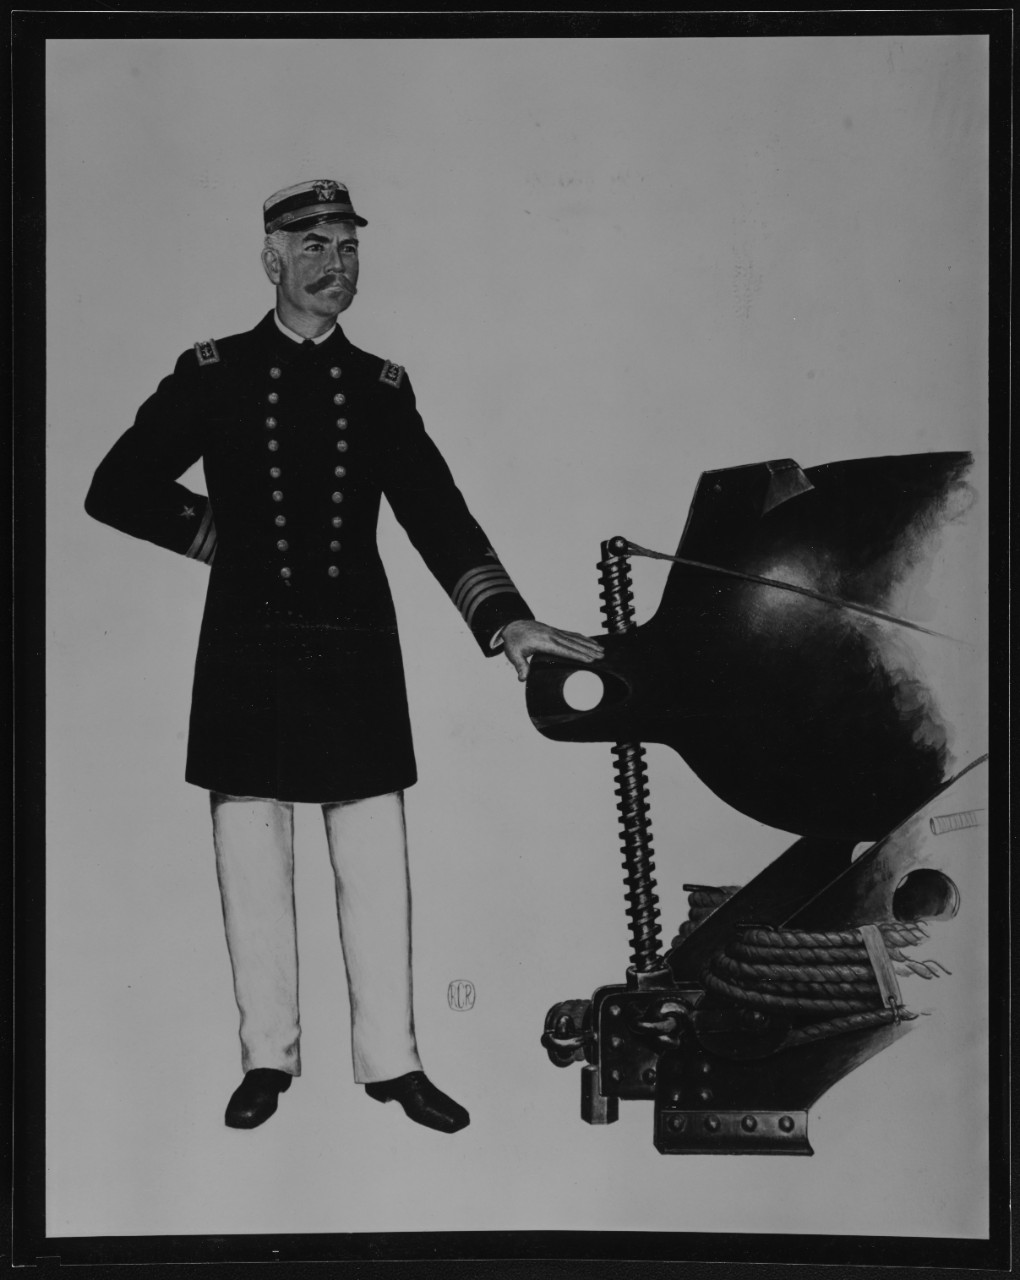 Captain's Uniform, 1880-1900